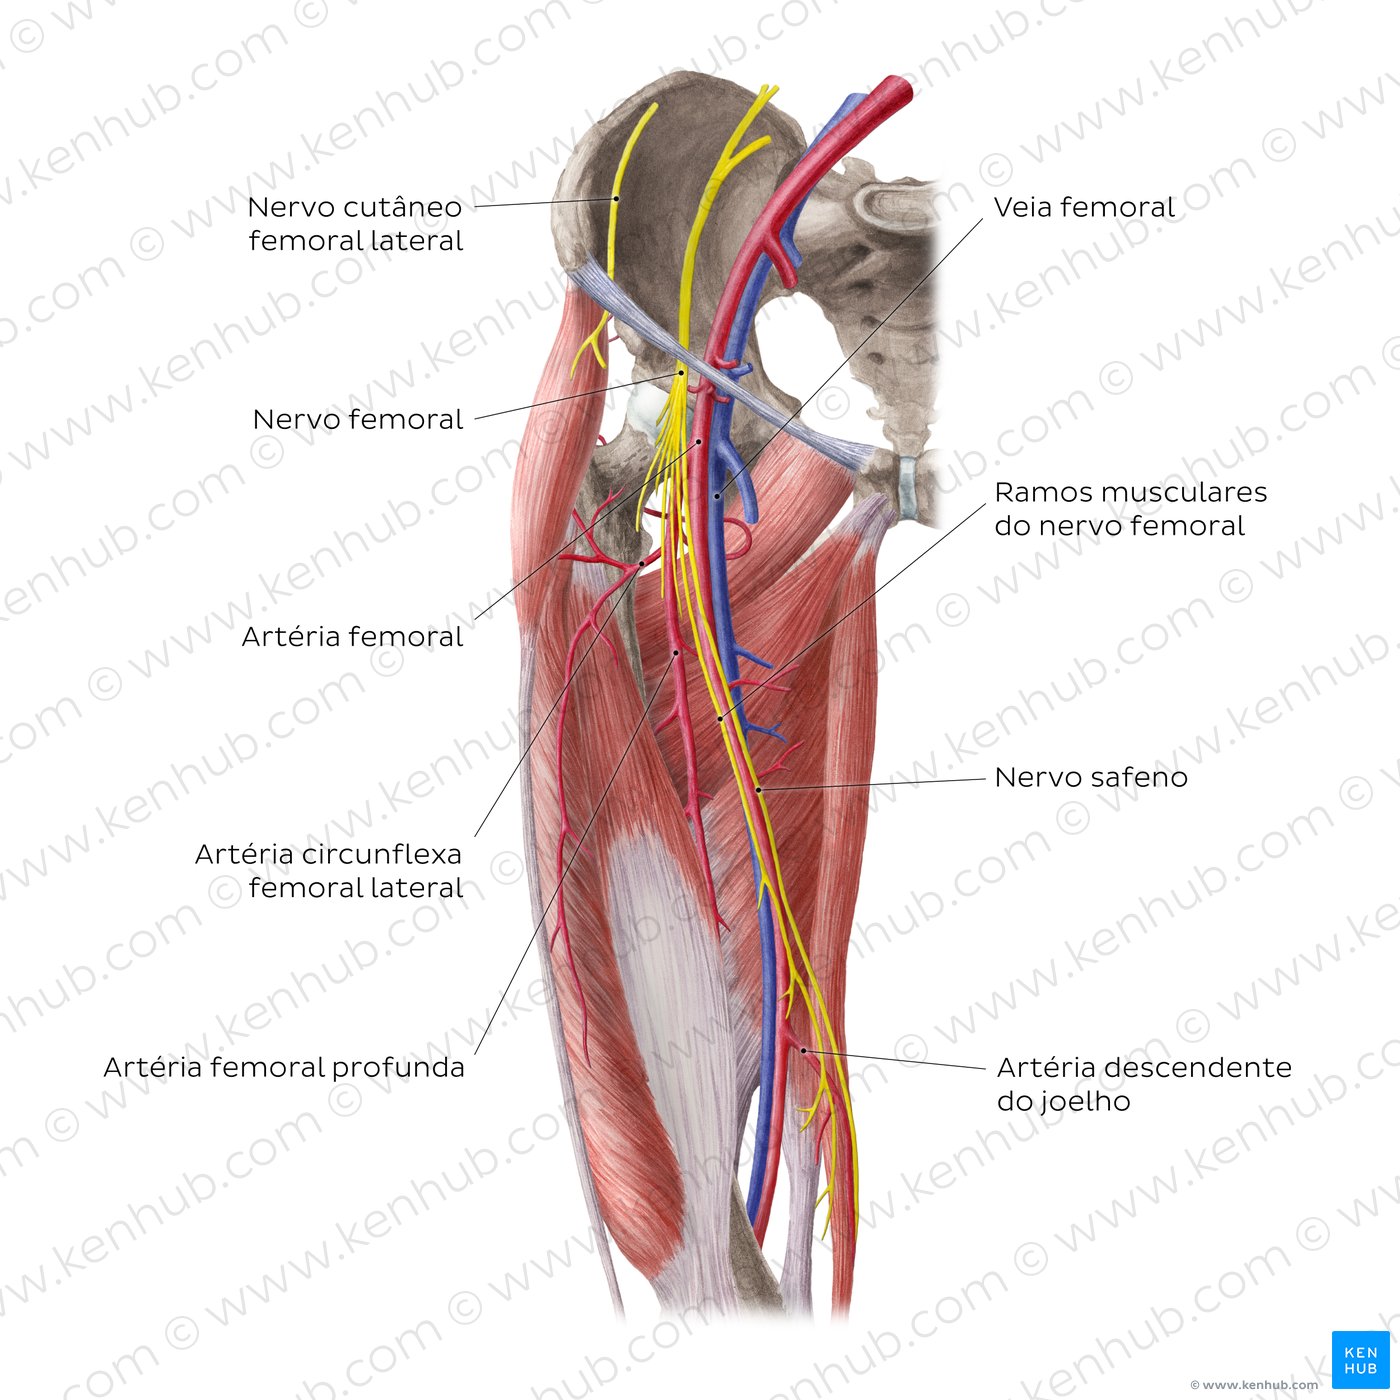 Artérias e nervos do quadril (anca) e coxa - vista anterior